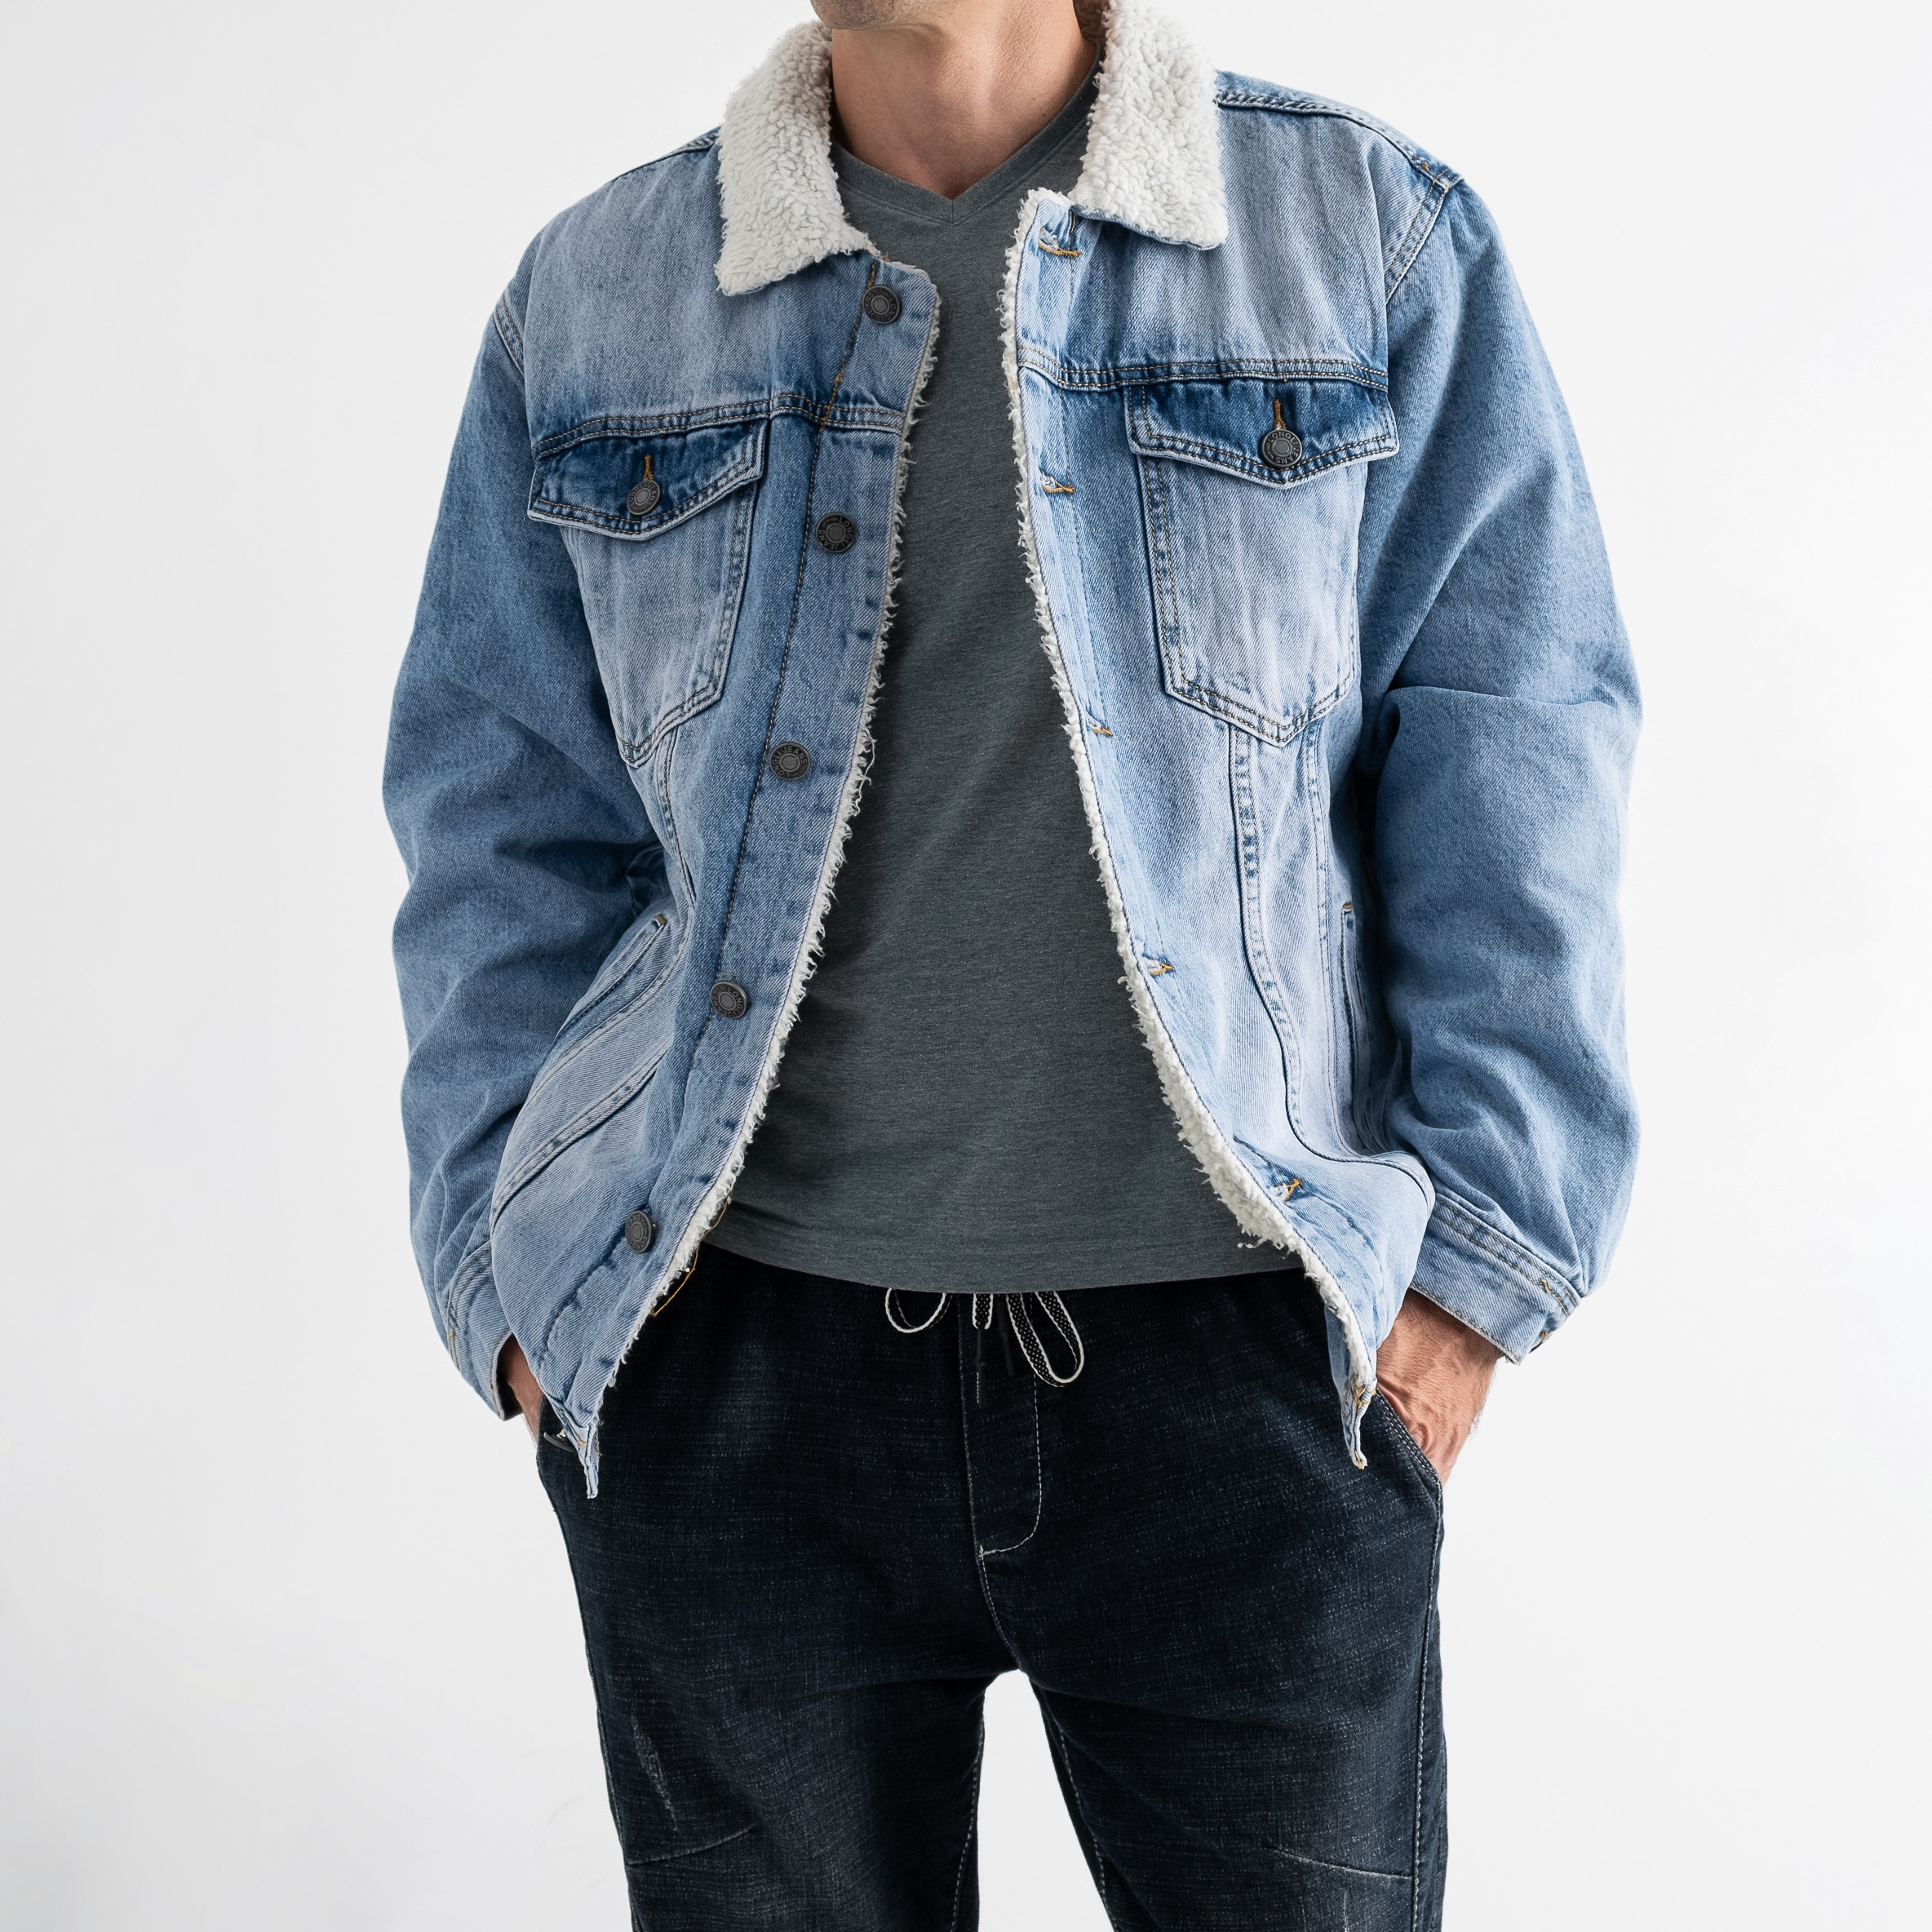 0515 Long Li джинсовая куртка на меху мужская голубая котоновая (6 ед. размеры: S.M.L.XL.2XL.3XL)